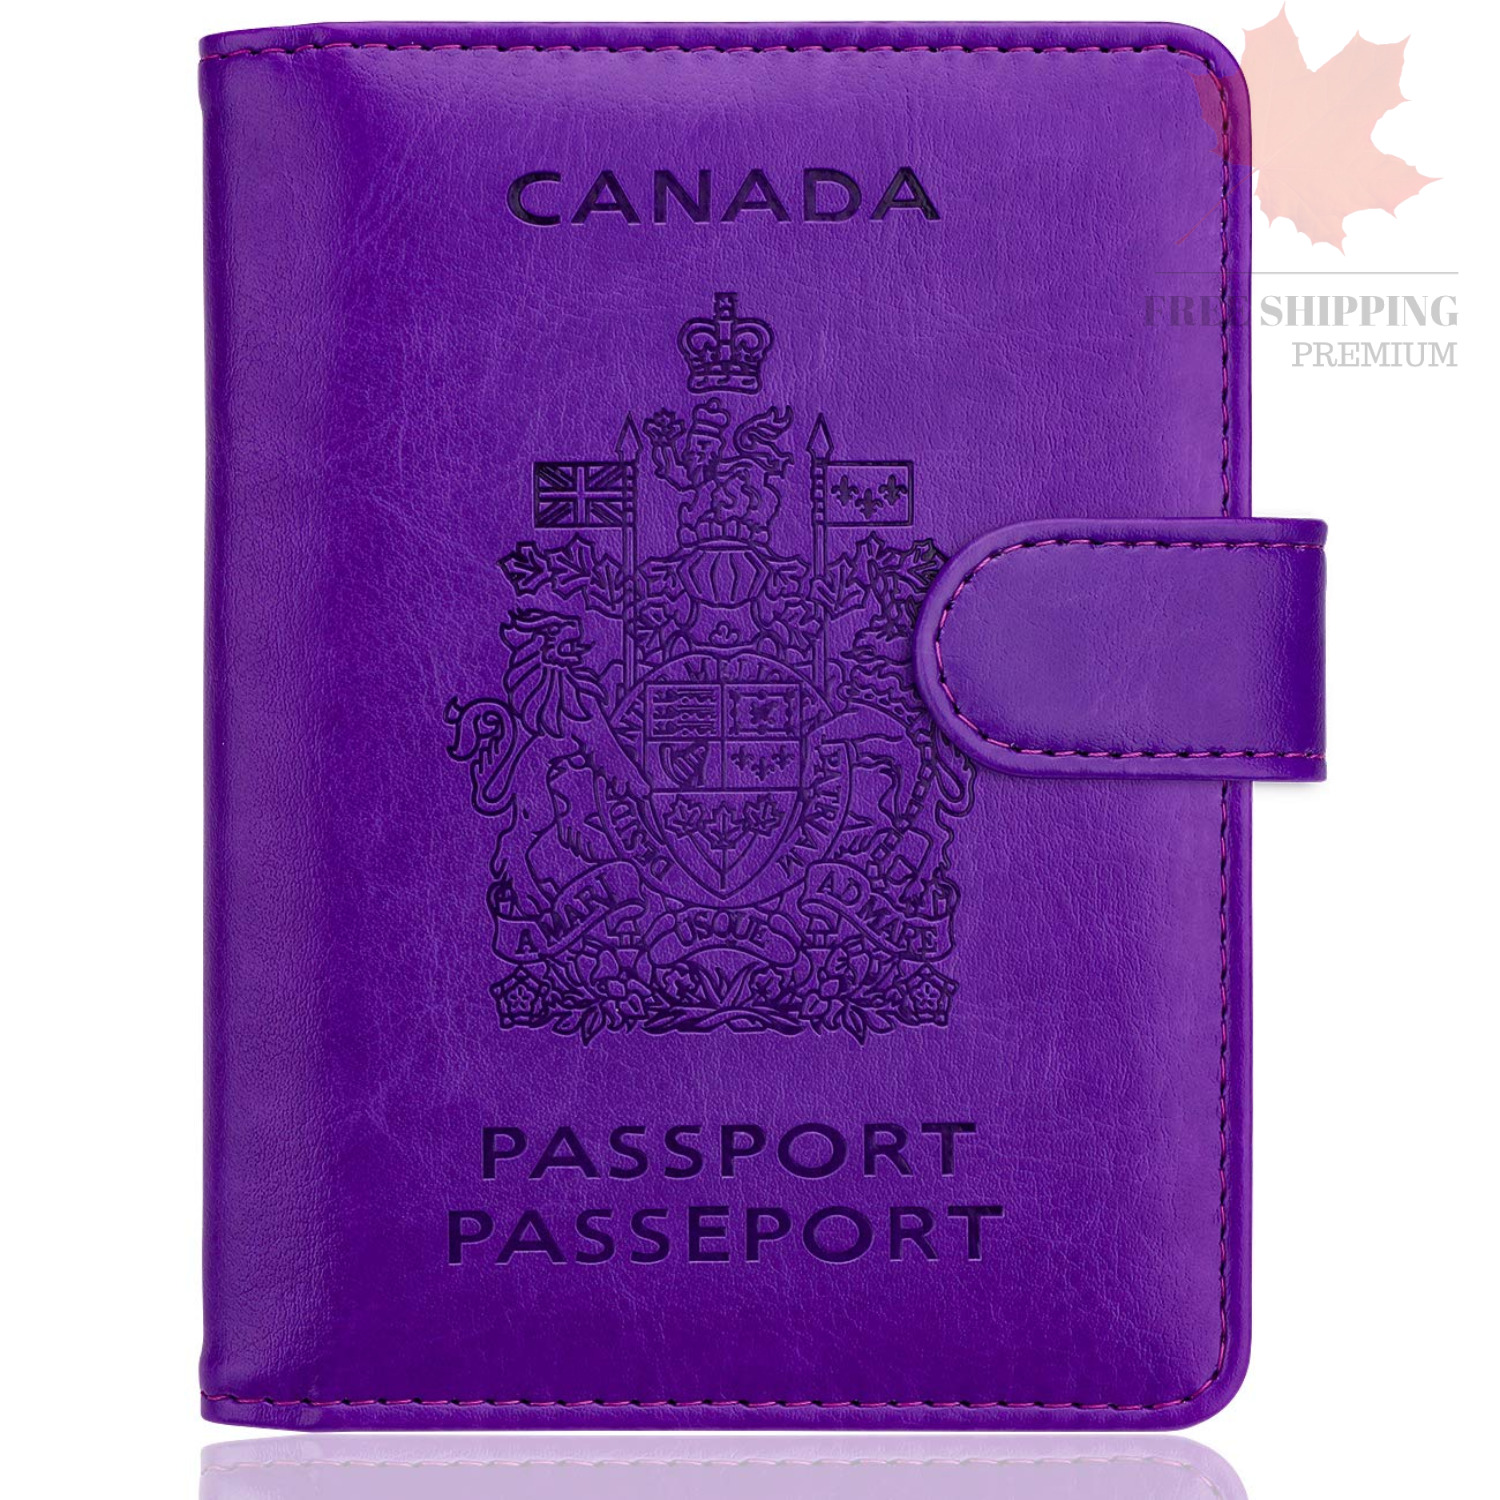 WALNEW RFID Blocking Passport Holder Travel Wallet Cover Case